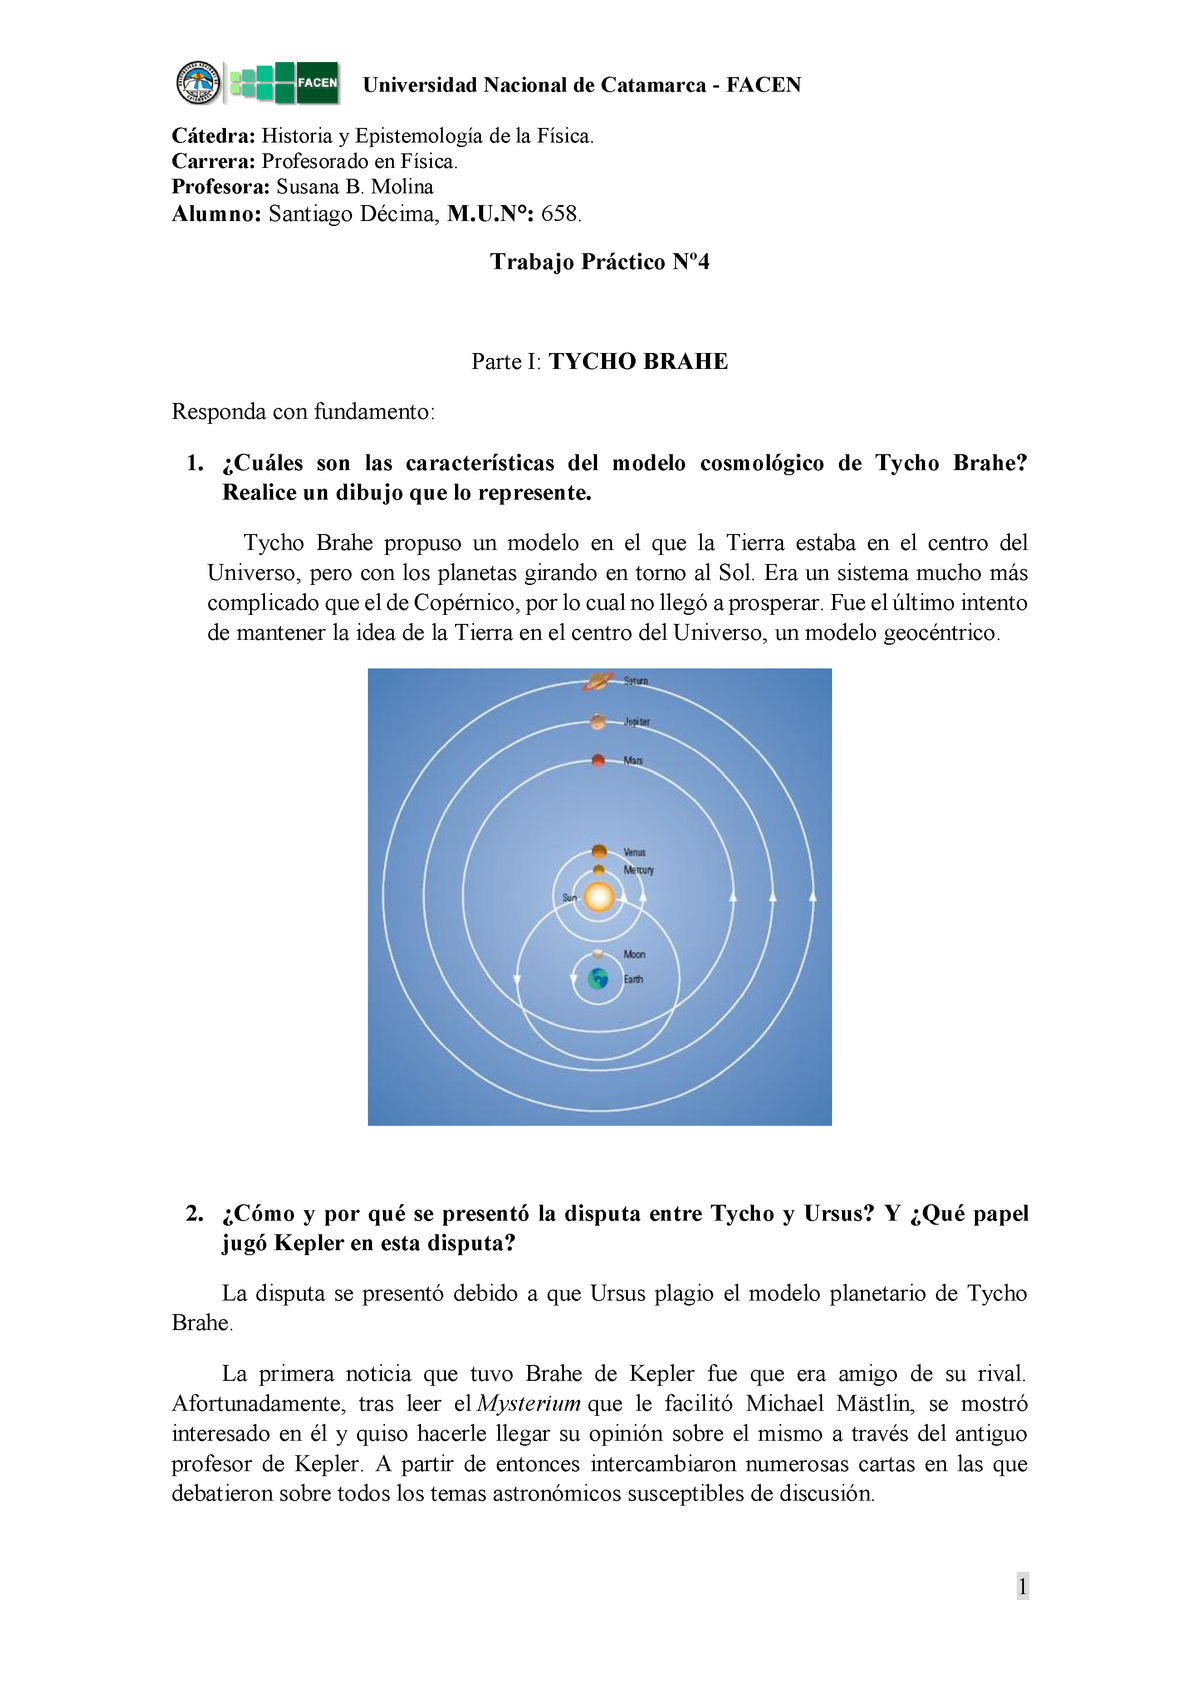 Historia de Kepler y sus tres leyes y Cosmología de Tycho Brahe (TP4) -  Warning: TT: undefined - Studocu